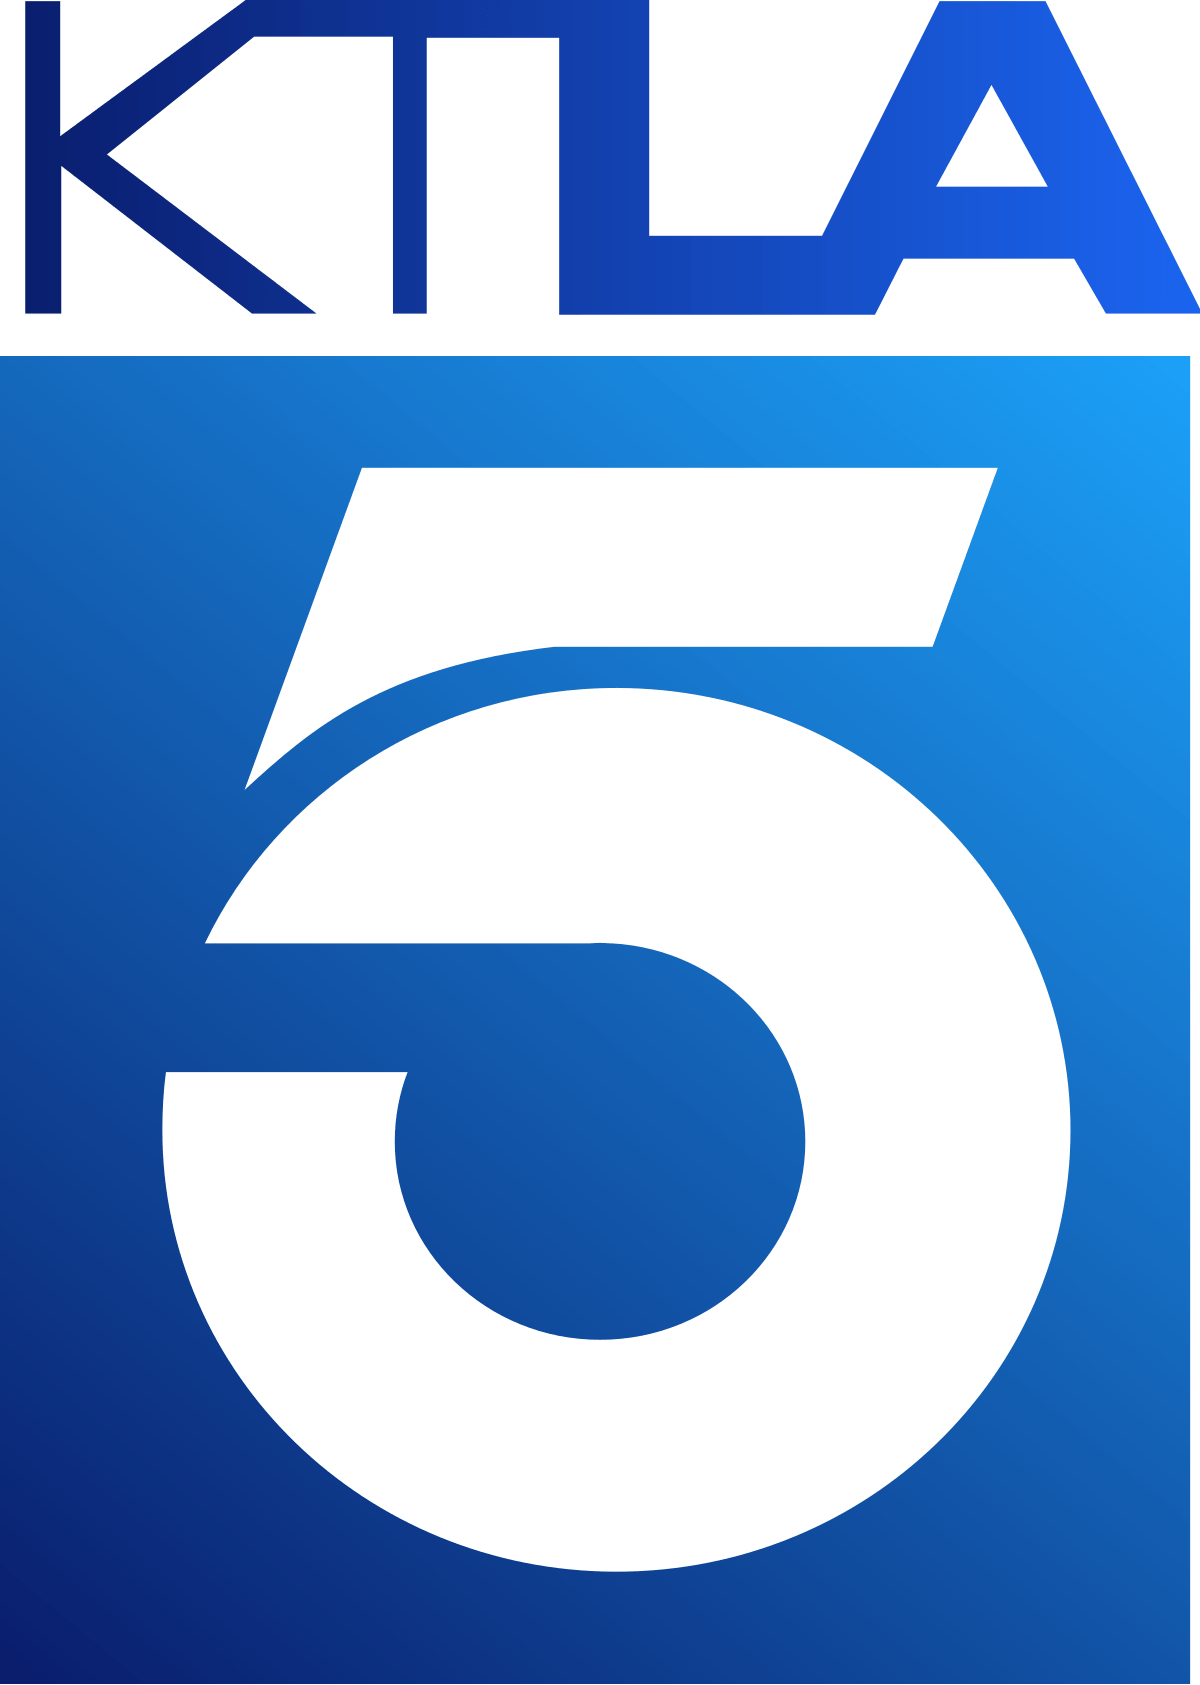 KTLA_logo